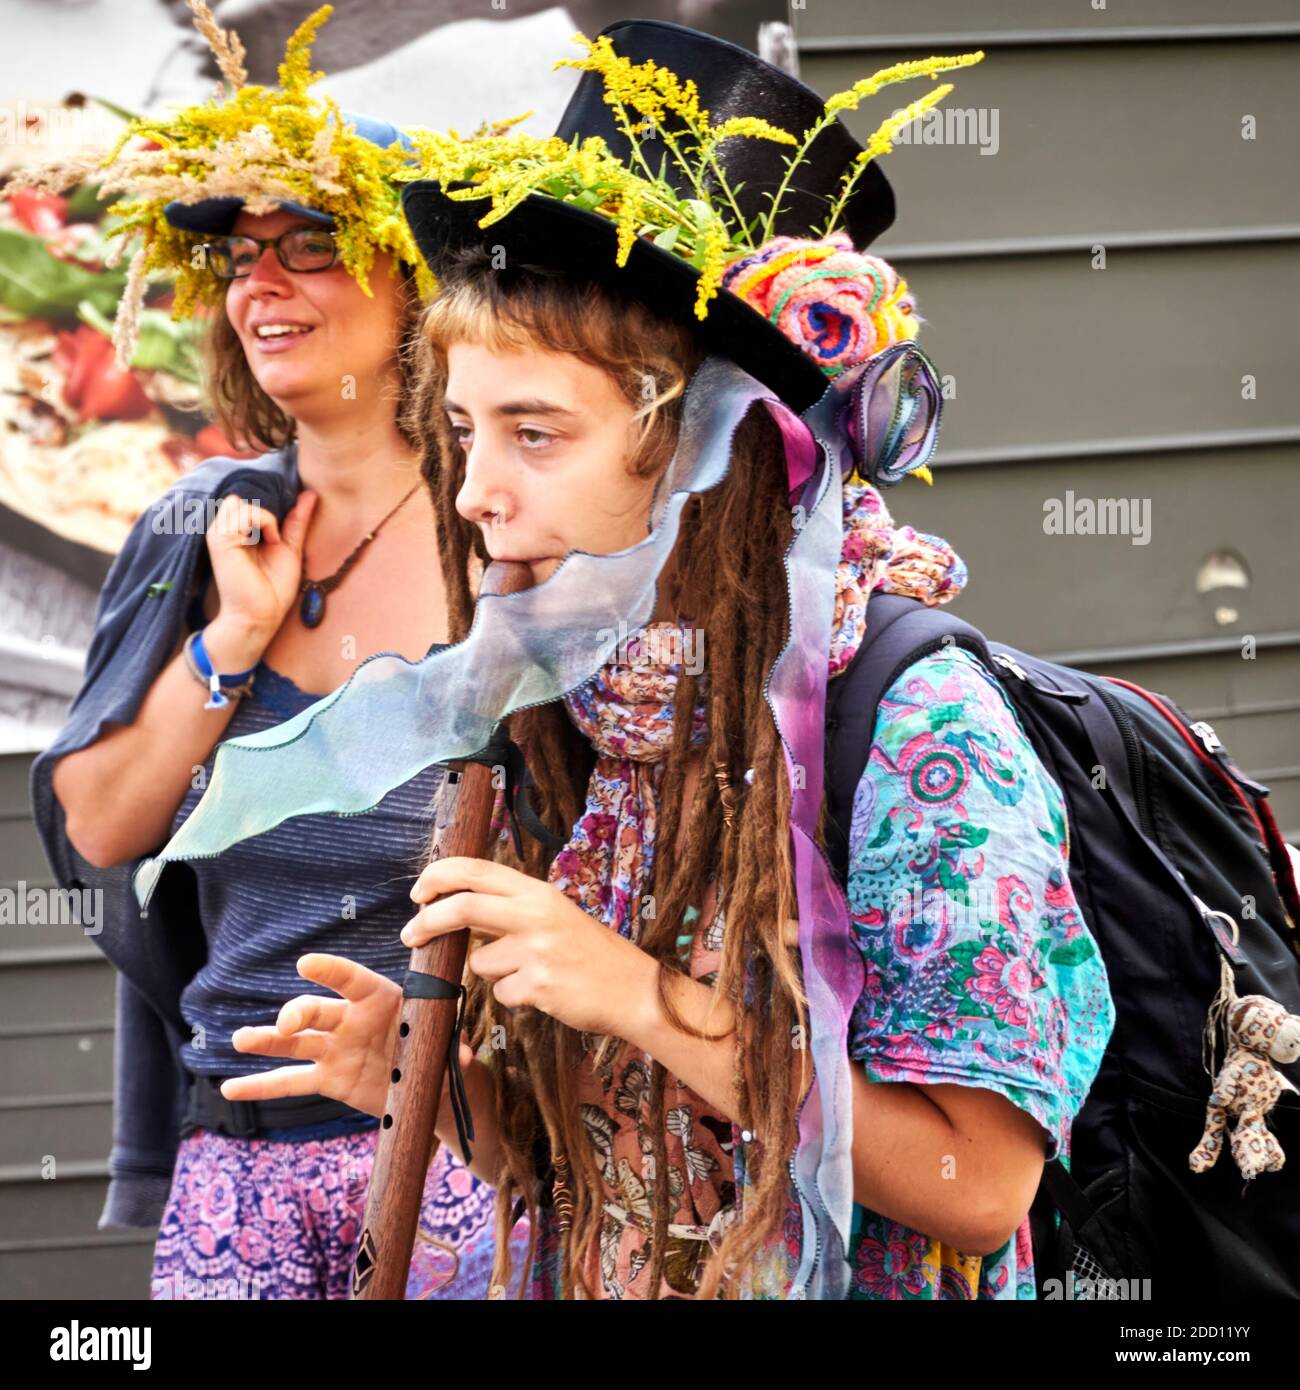 Berlin, Allemagne, 29 août 2020: Manifestation de déni Corona, jeune femme paisible demonsrant avec des écluses de read et un chapeau noir à fleur jaune Banque D'Images